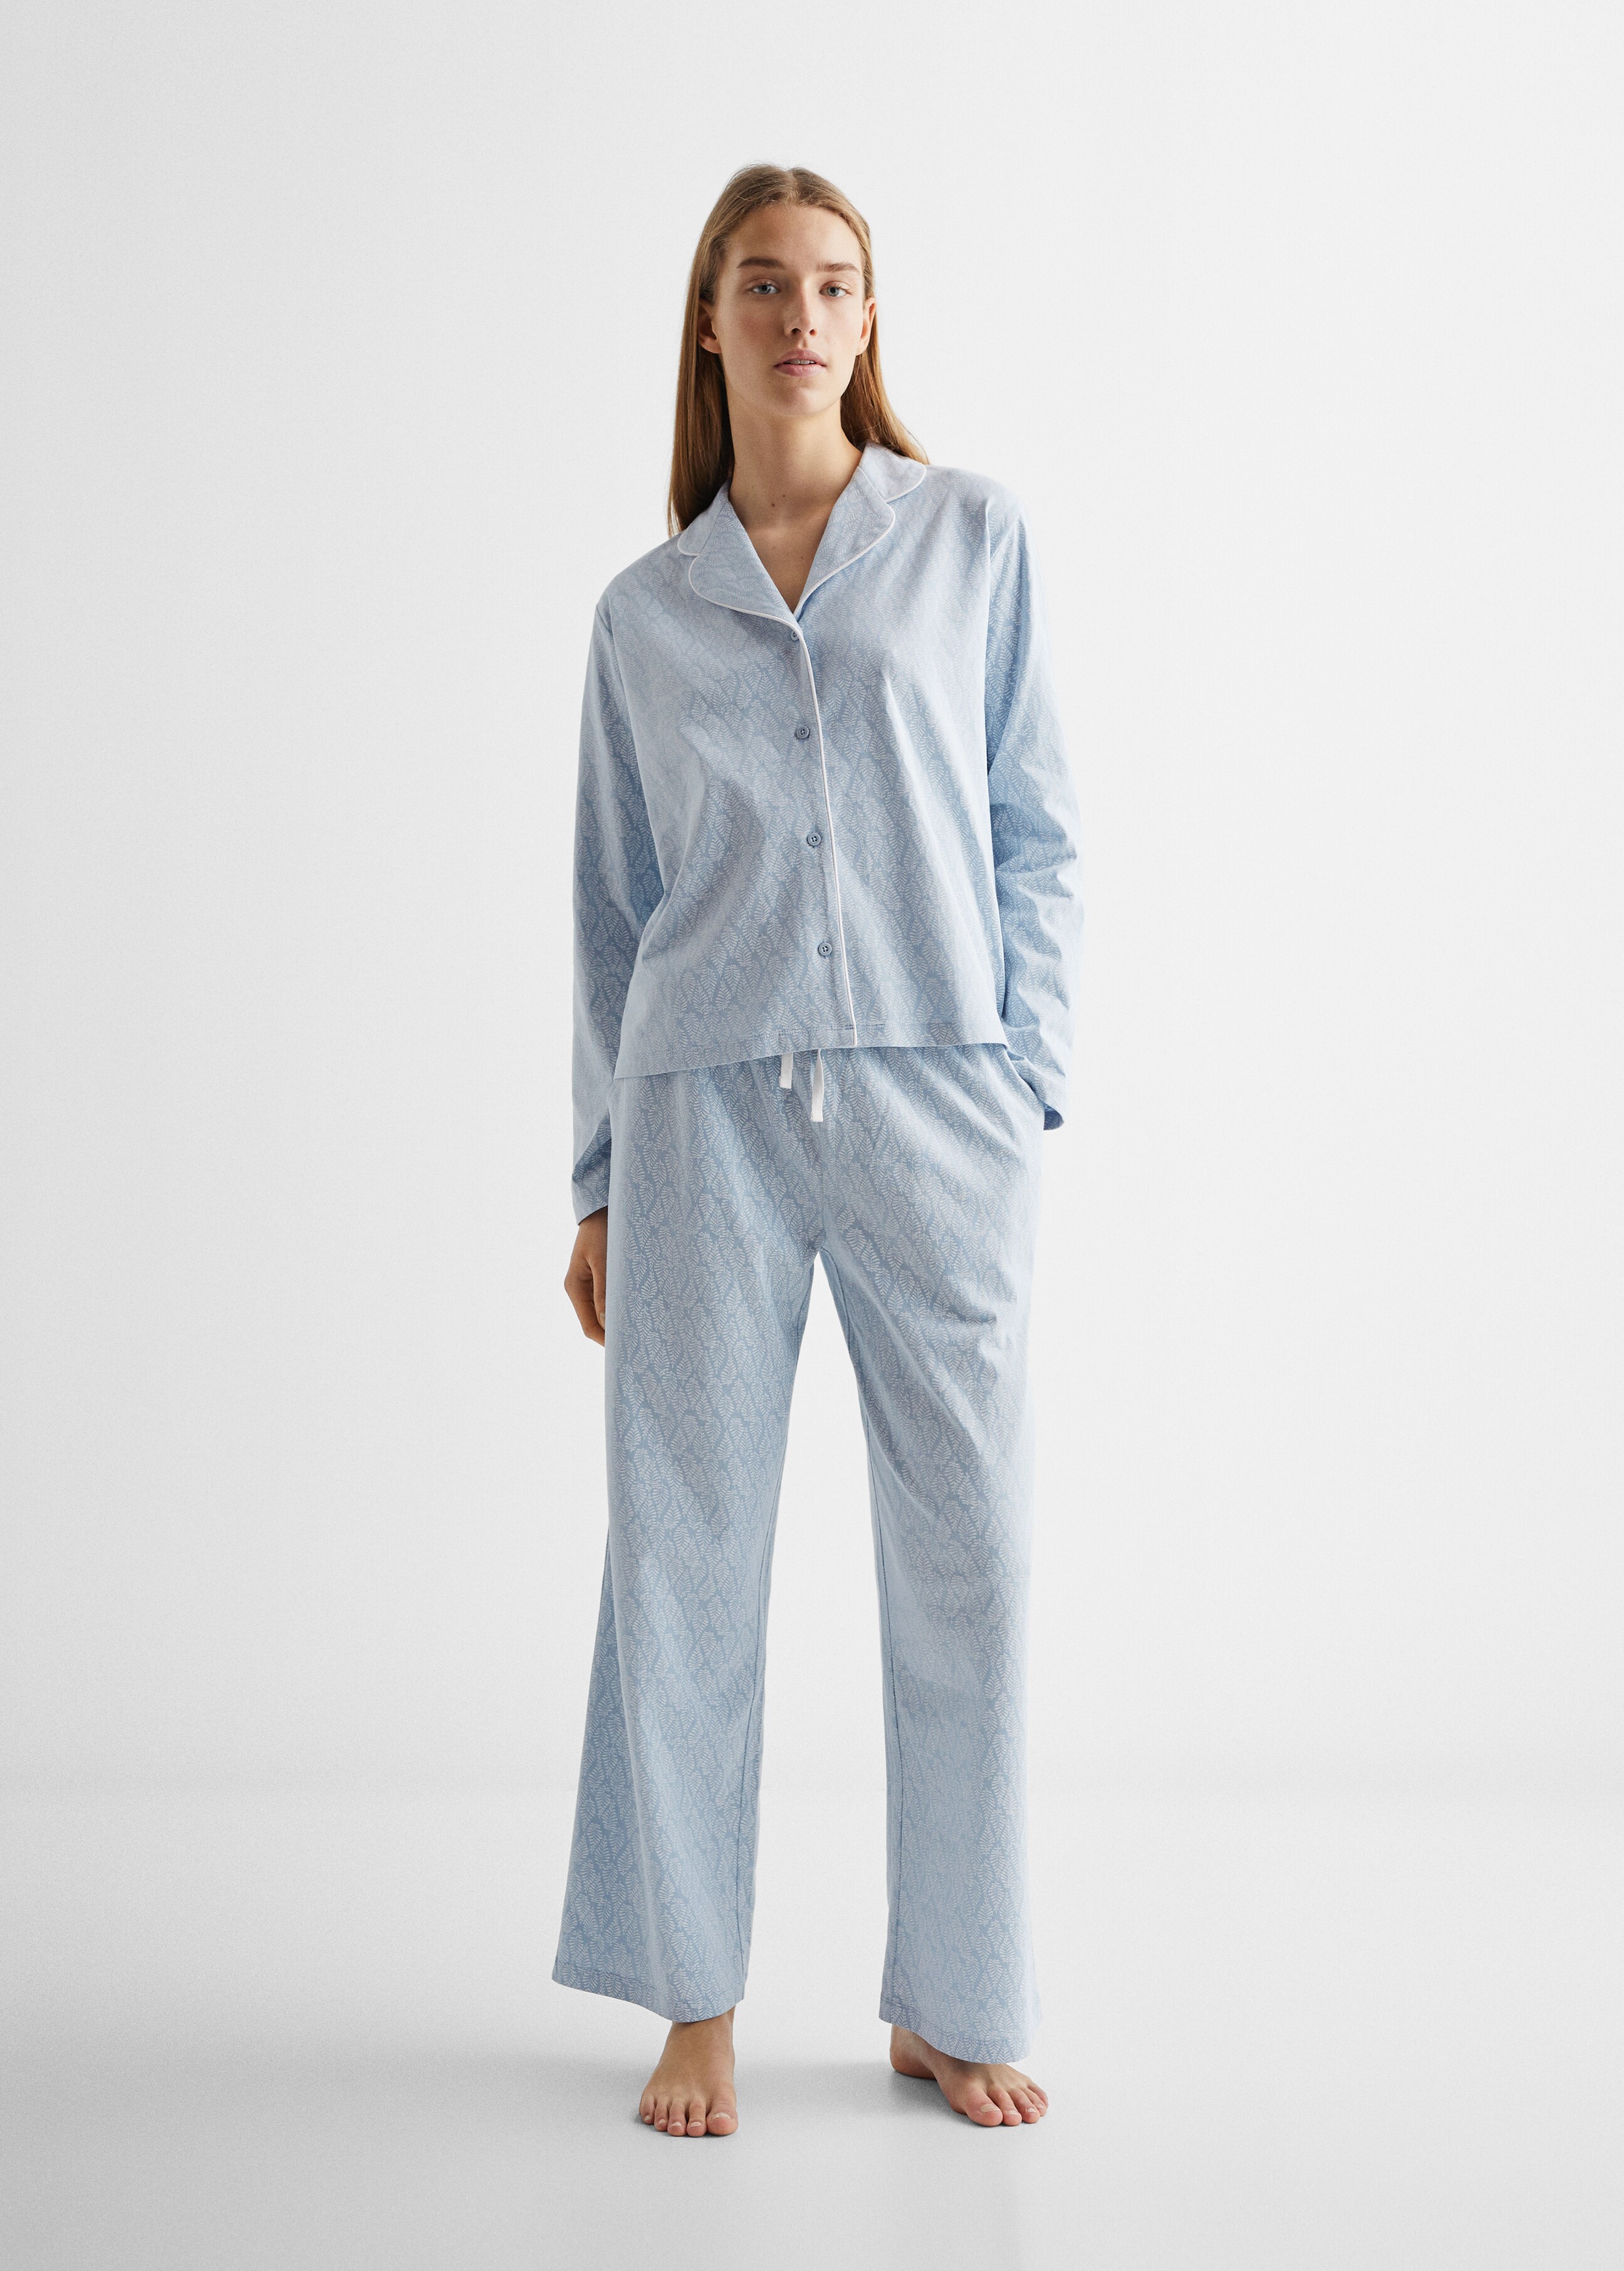 Pyjama-Pack aus gemusterter Baumwolle - Allgemeine Ansicht